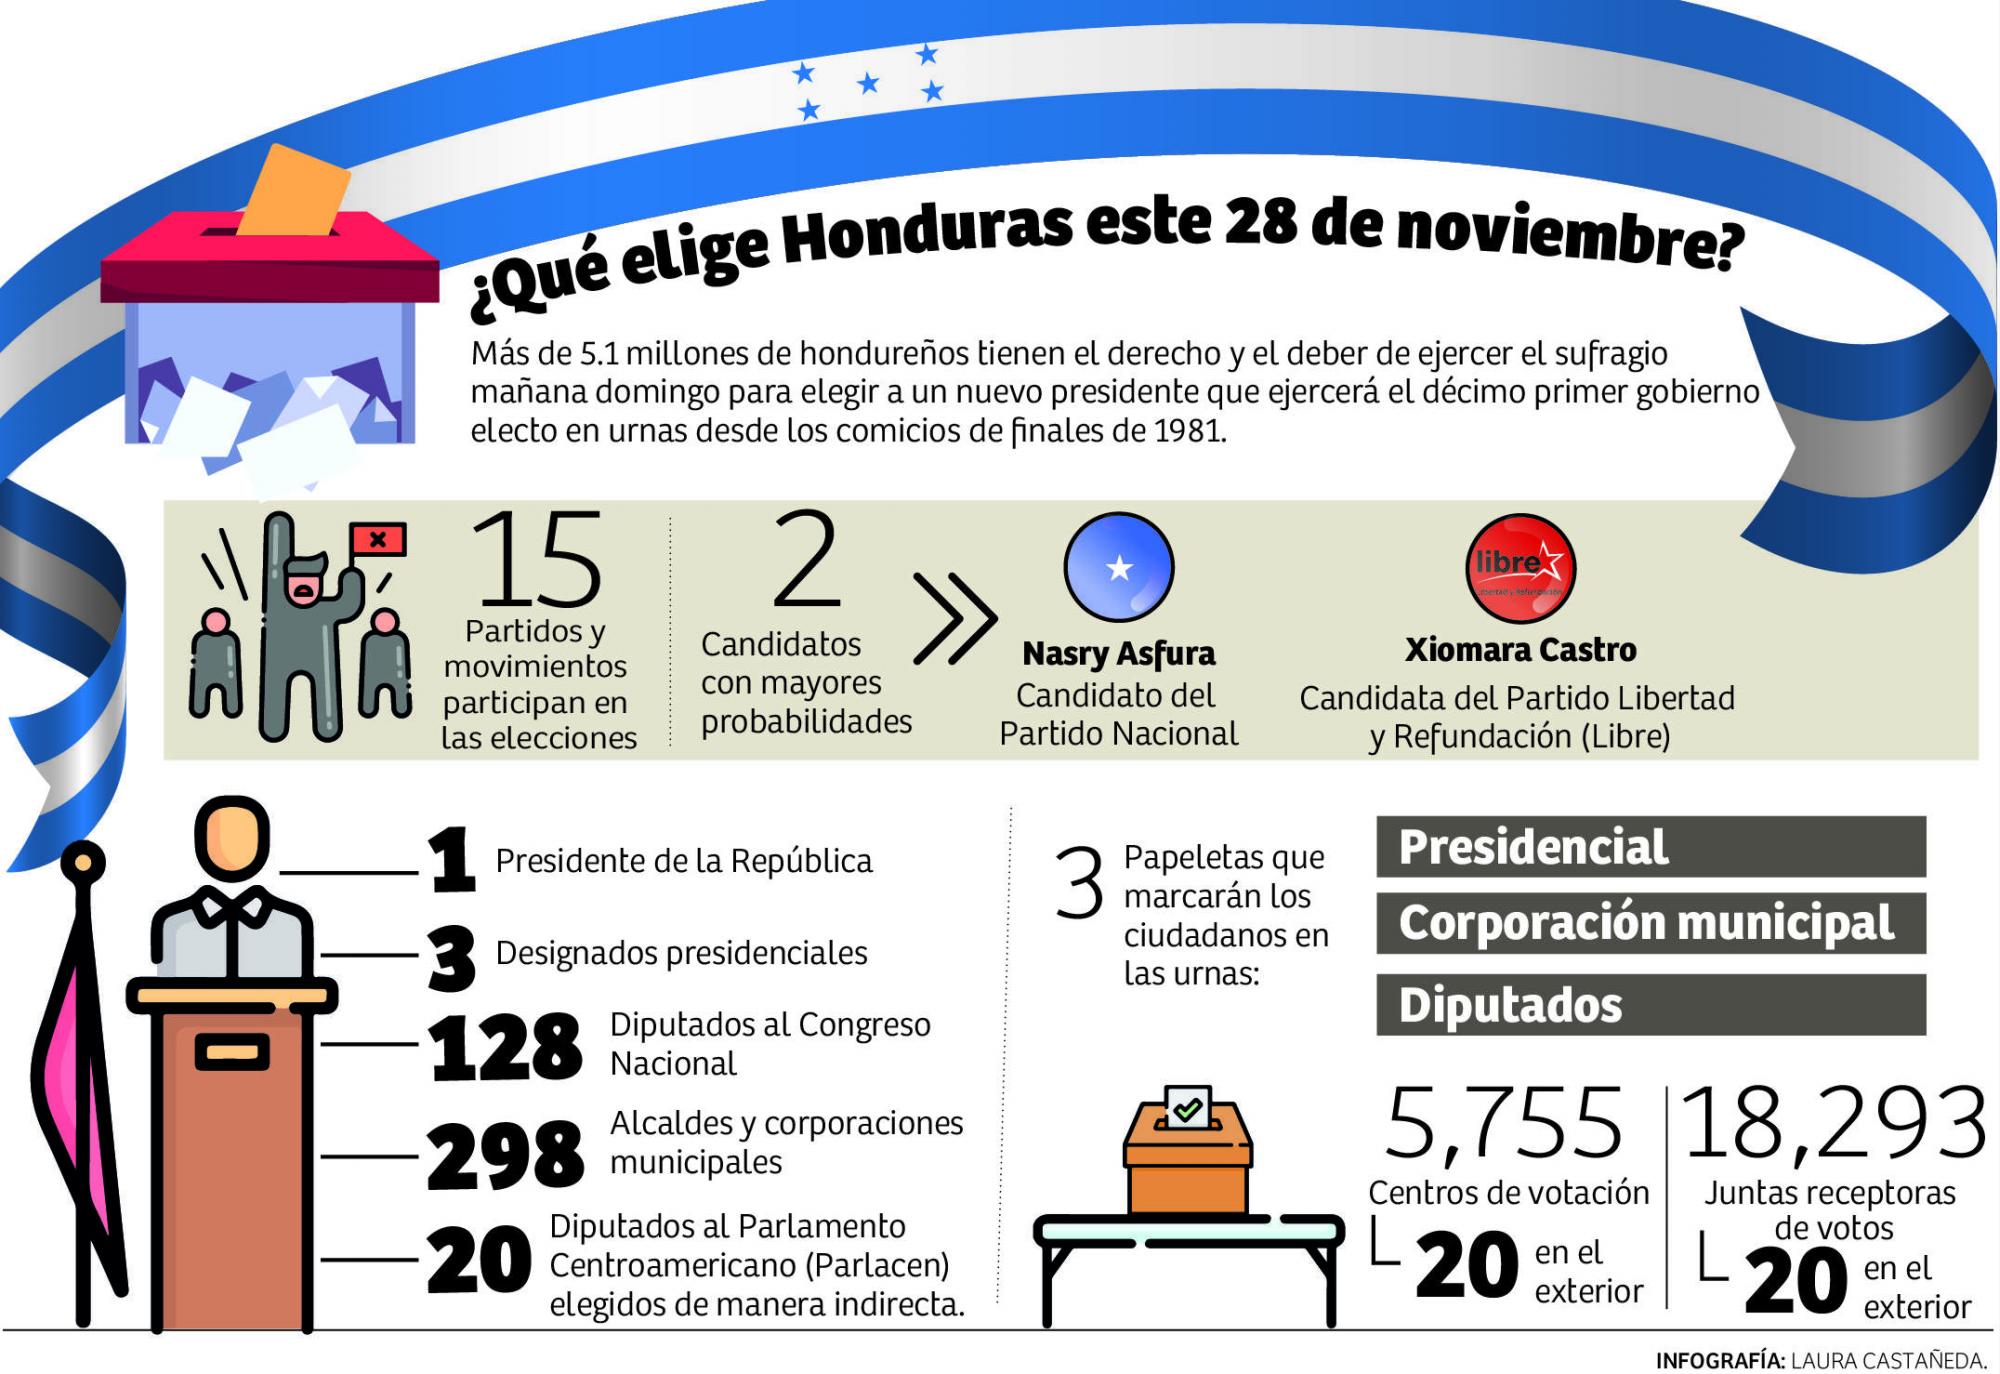 $!Por primera vez en la historia democrática de Honduras, más de 10,000 personas aspiran a un cargo de elección popular. Solo para diputados, los 15 partidos y movimientos postulan a 1,920 personas.